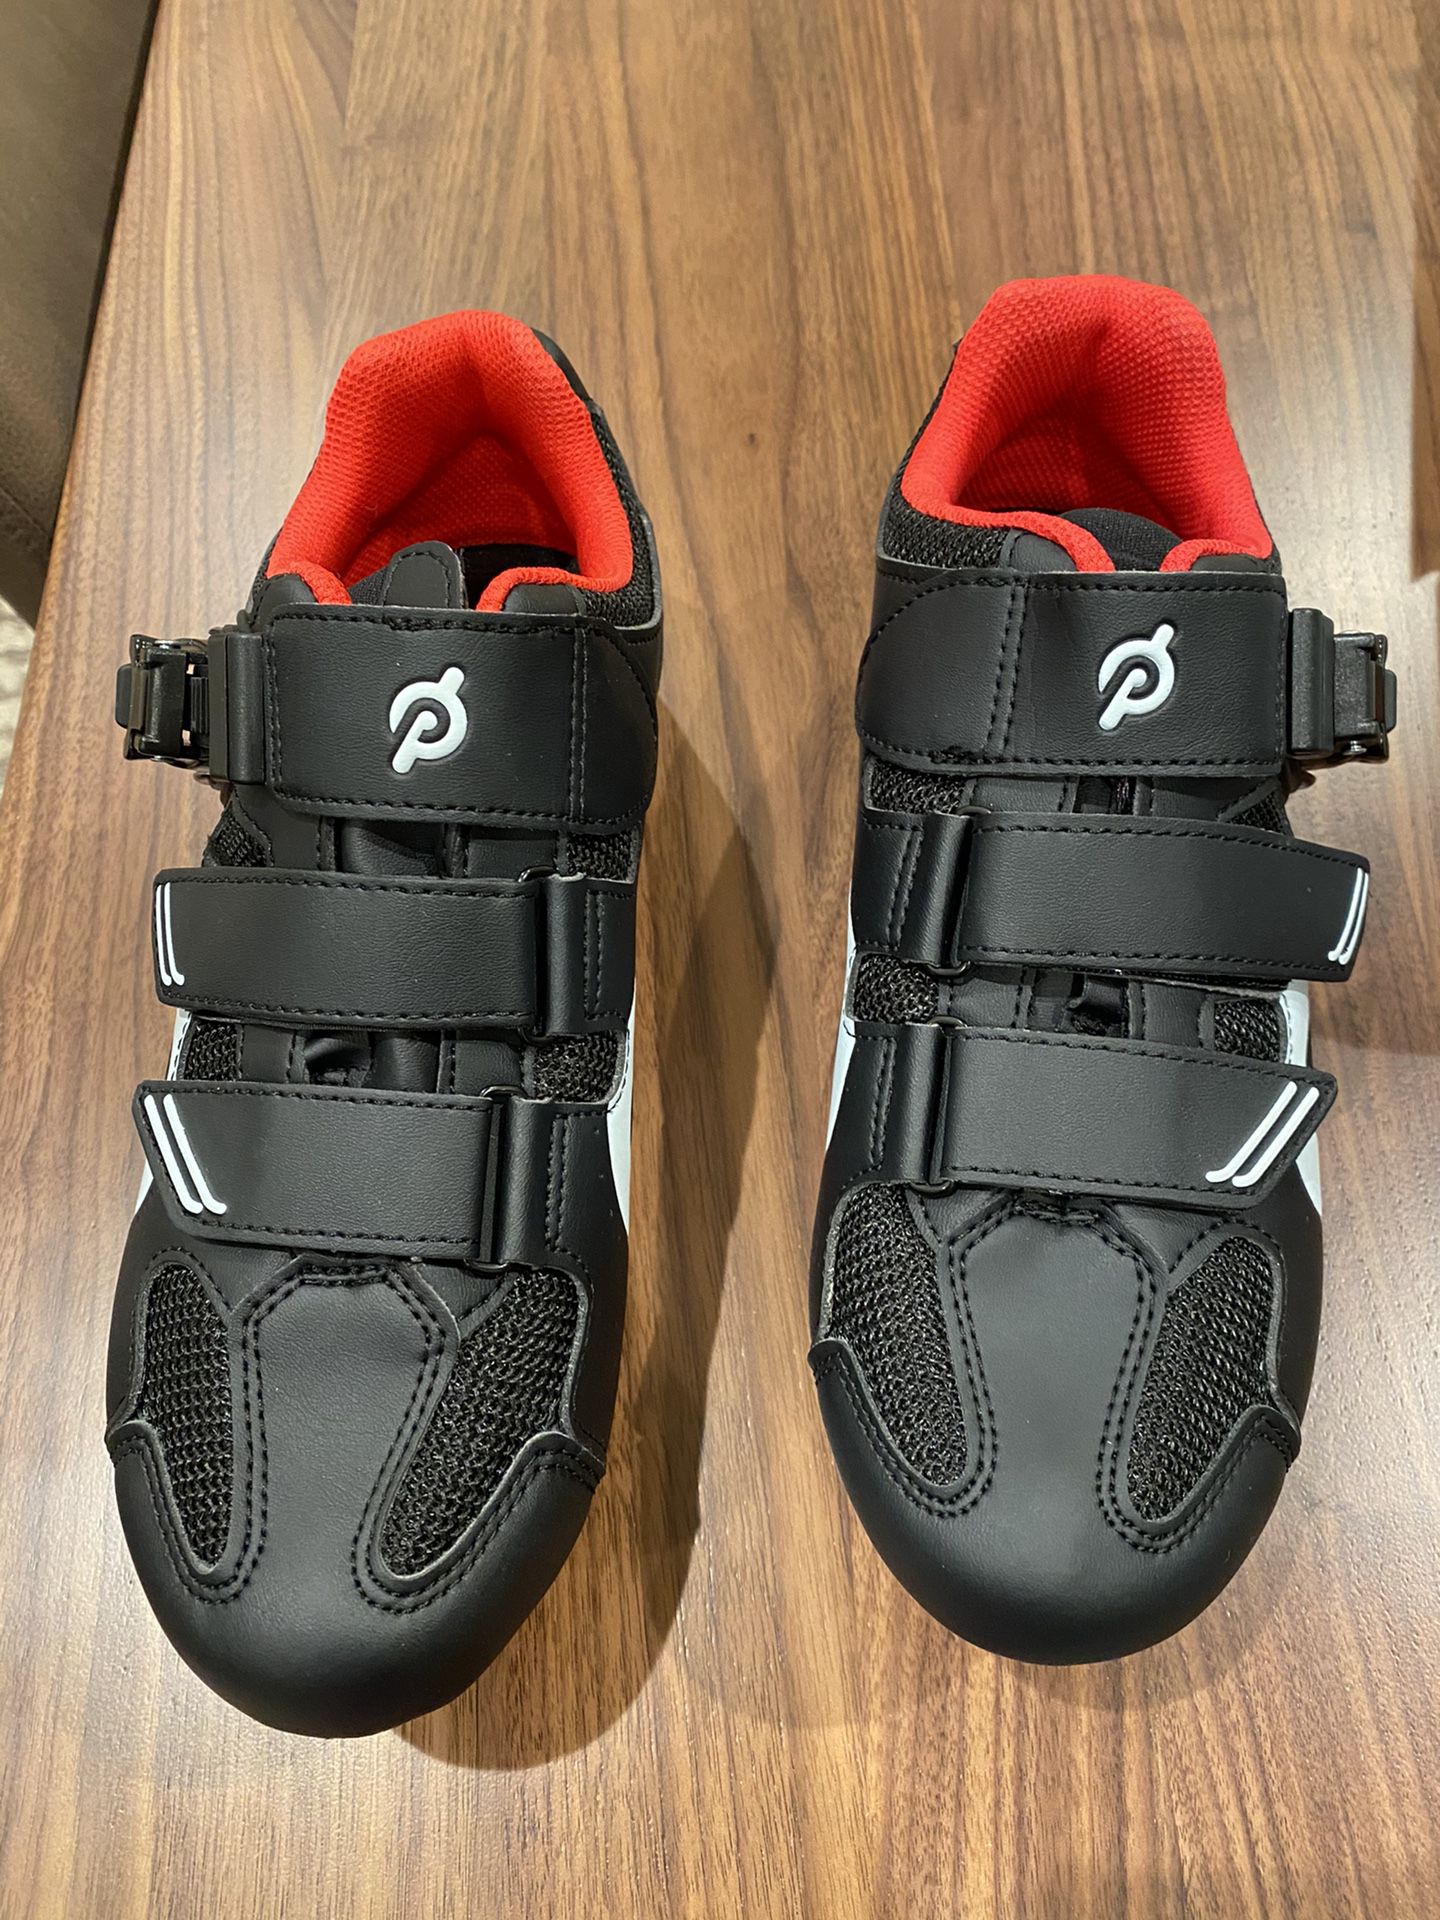 NEW Peloton shoes size 40